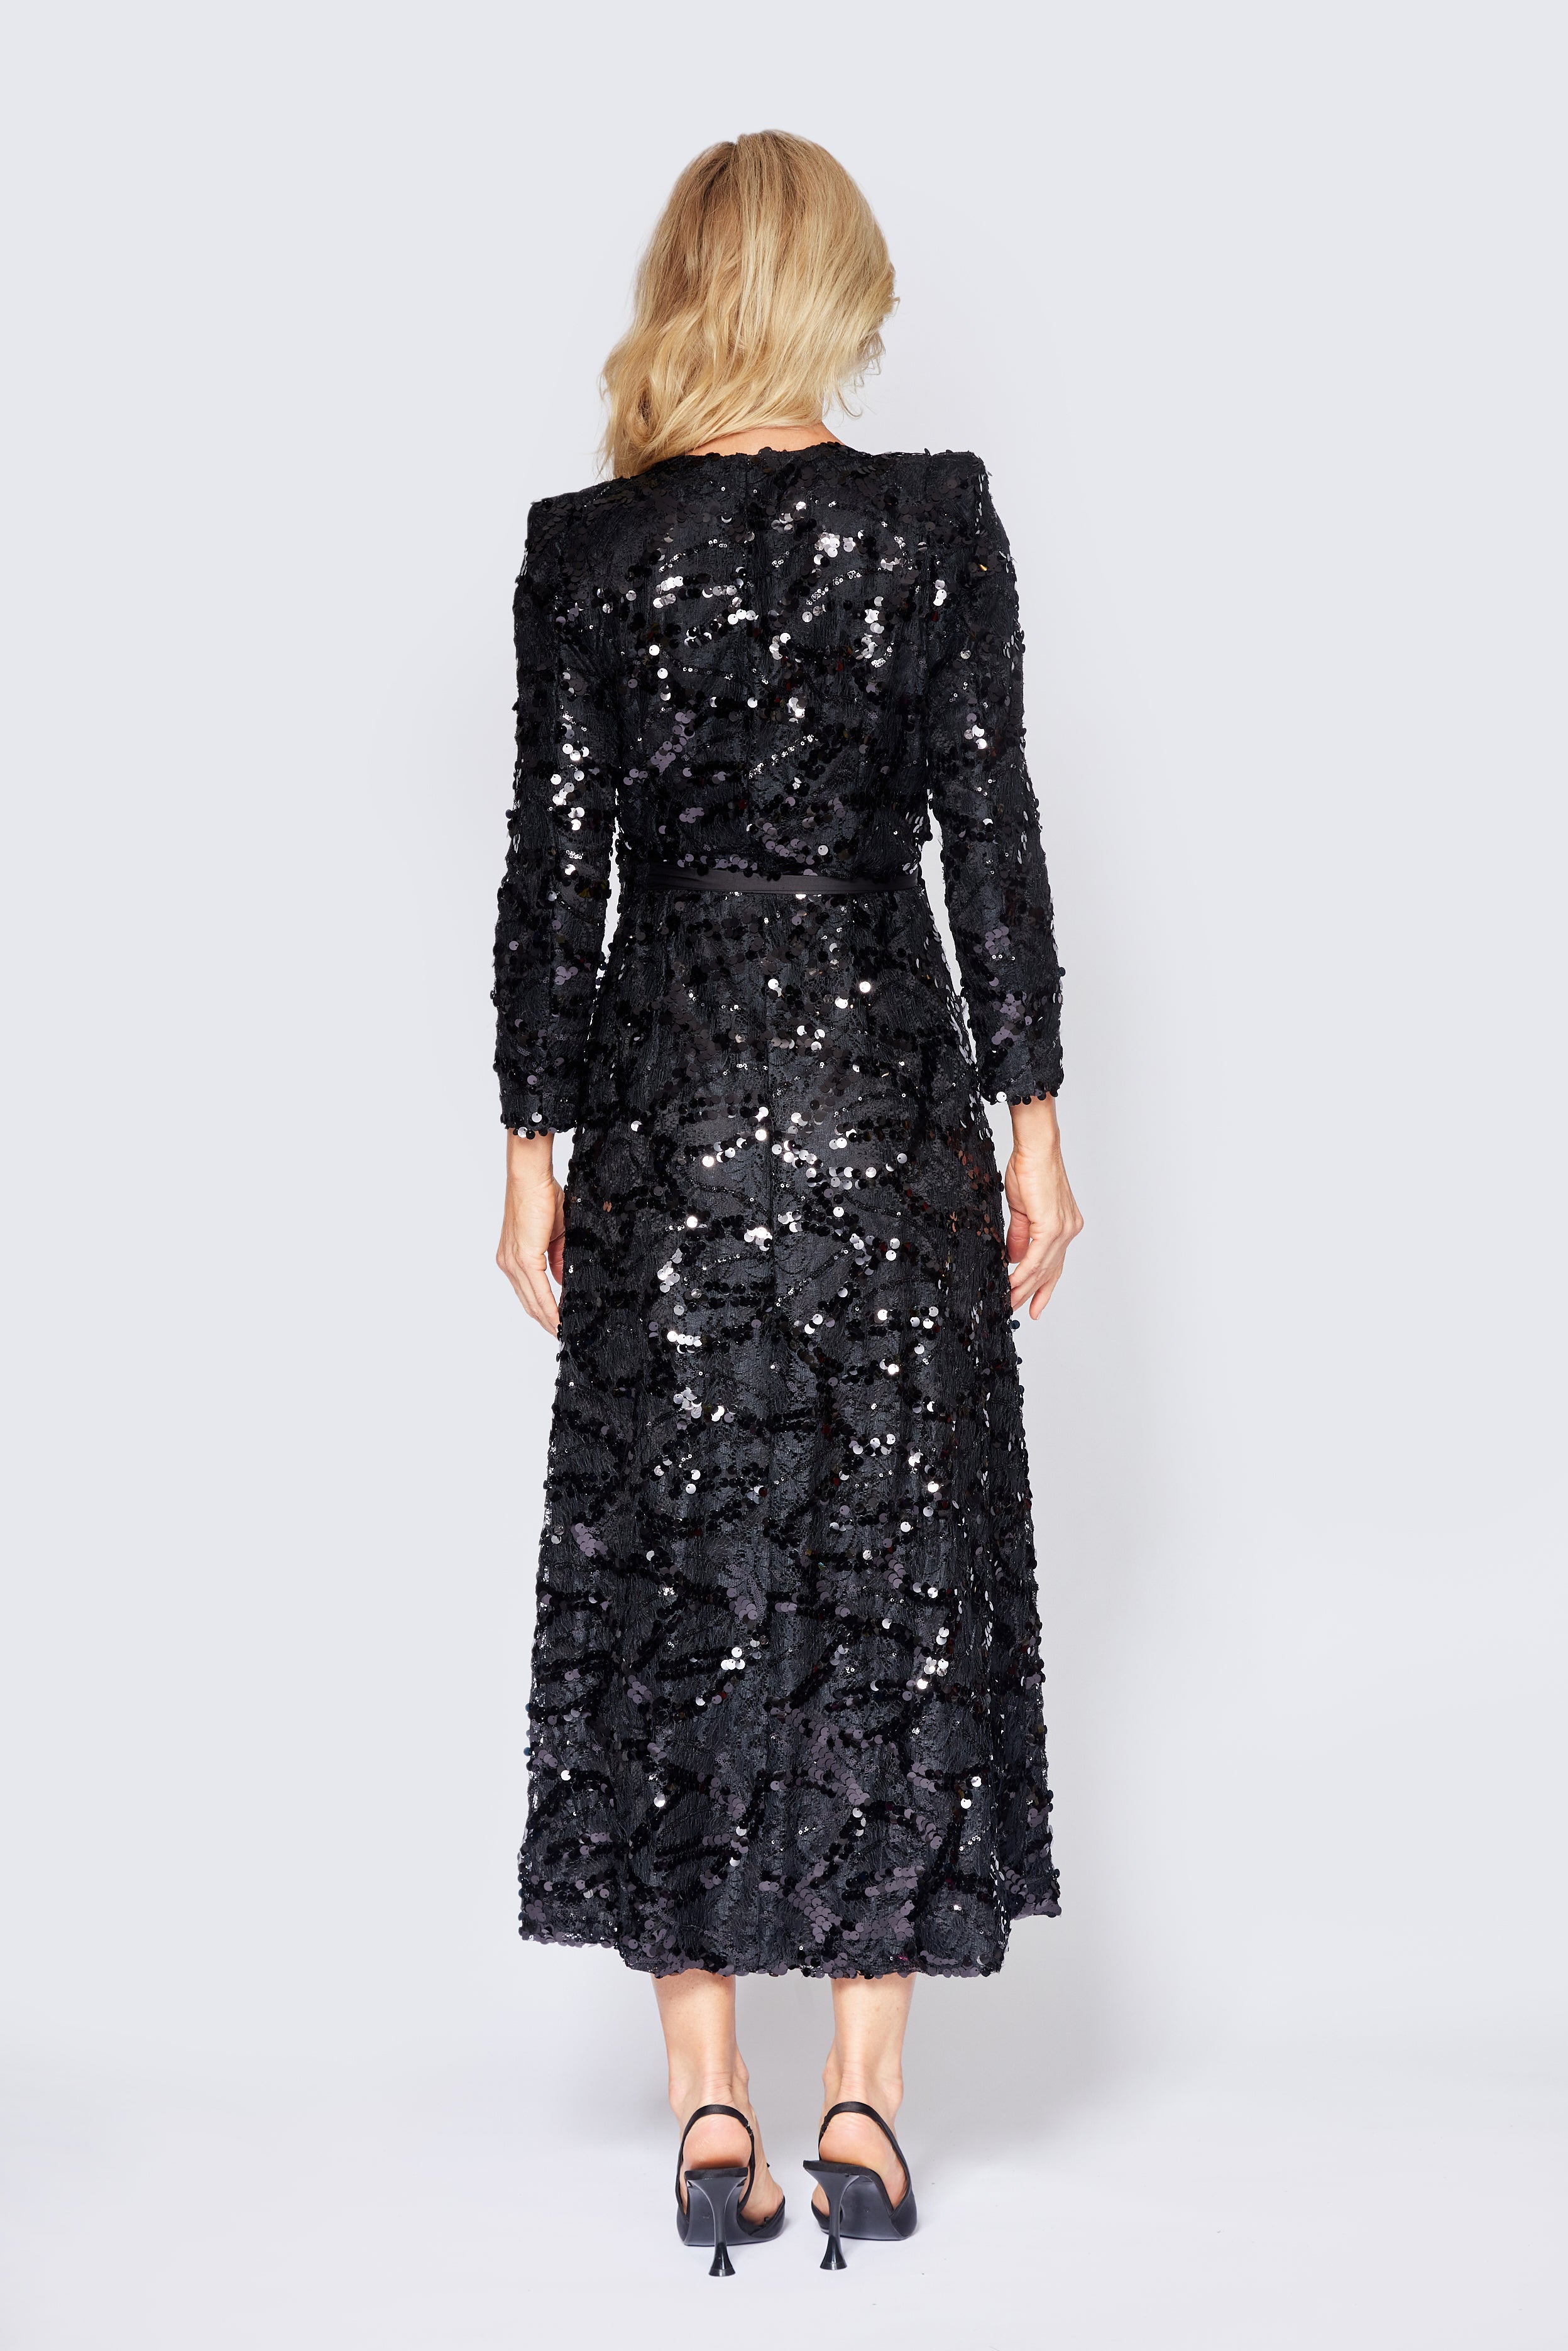 Black Lace/Sequin Wrap Dress